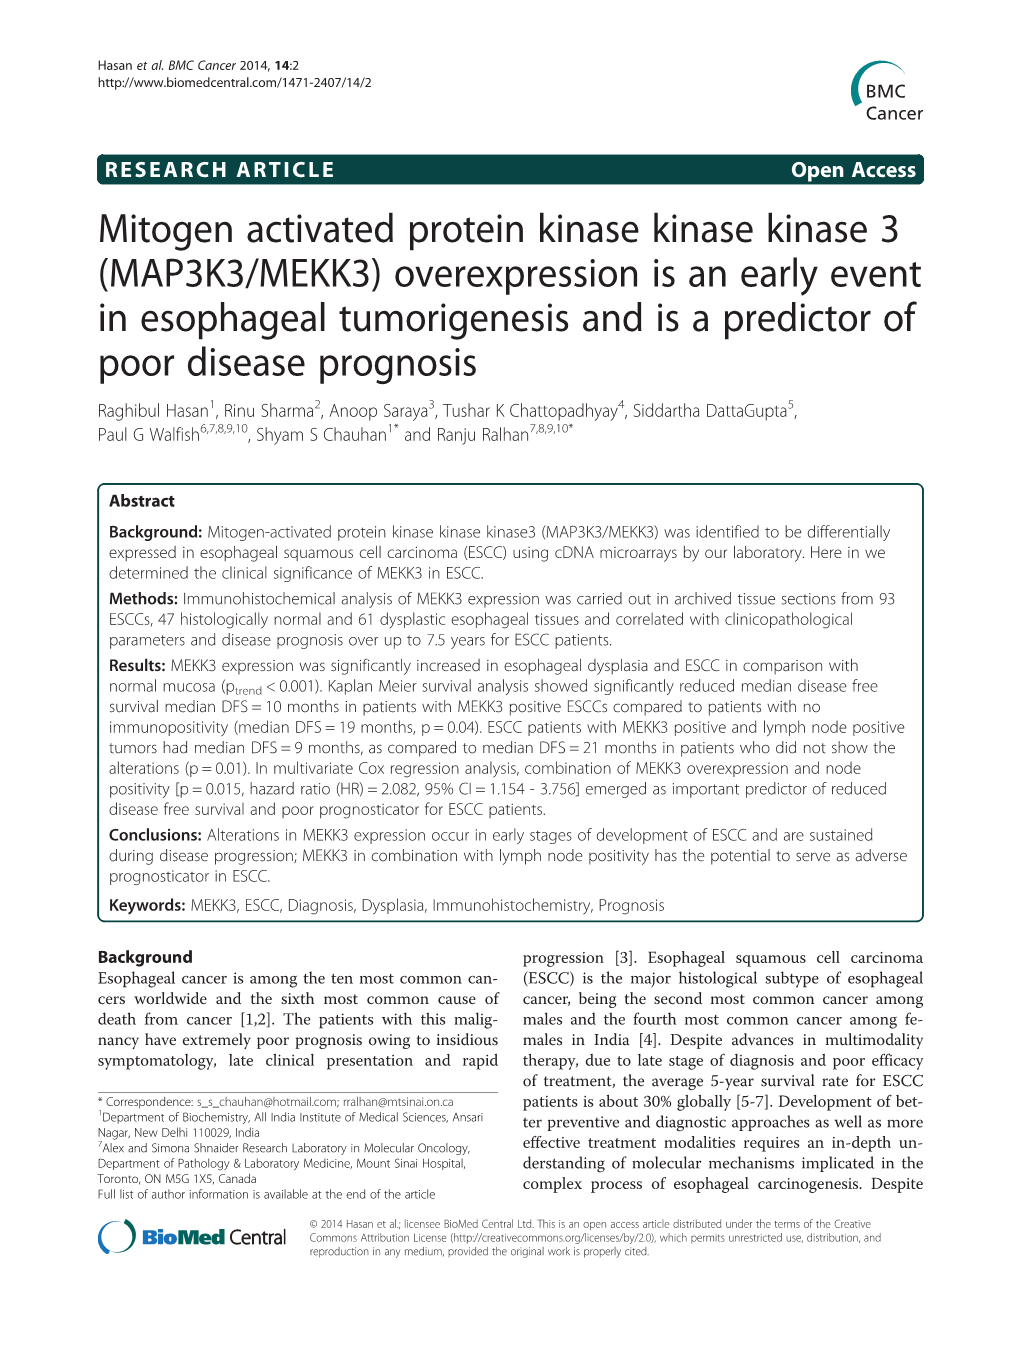 Mitogen Activated Protein Kinase Kinase Kinase 3 (MAP3K3/MEKK3